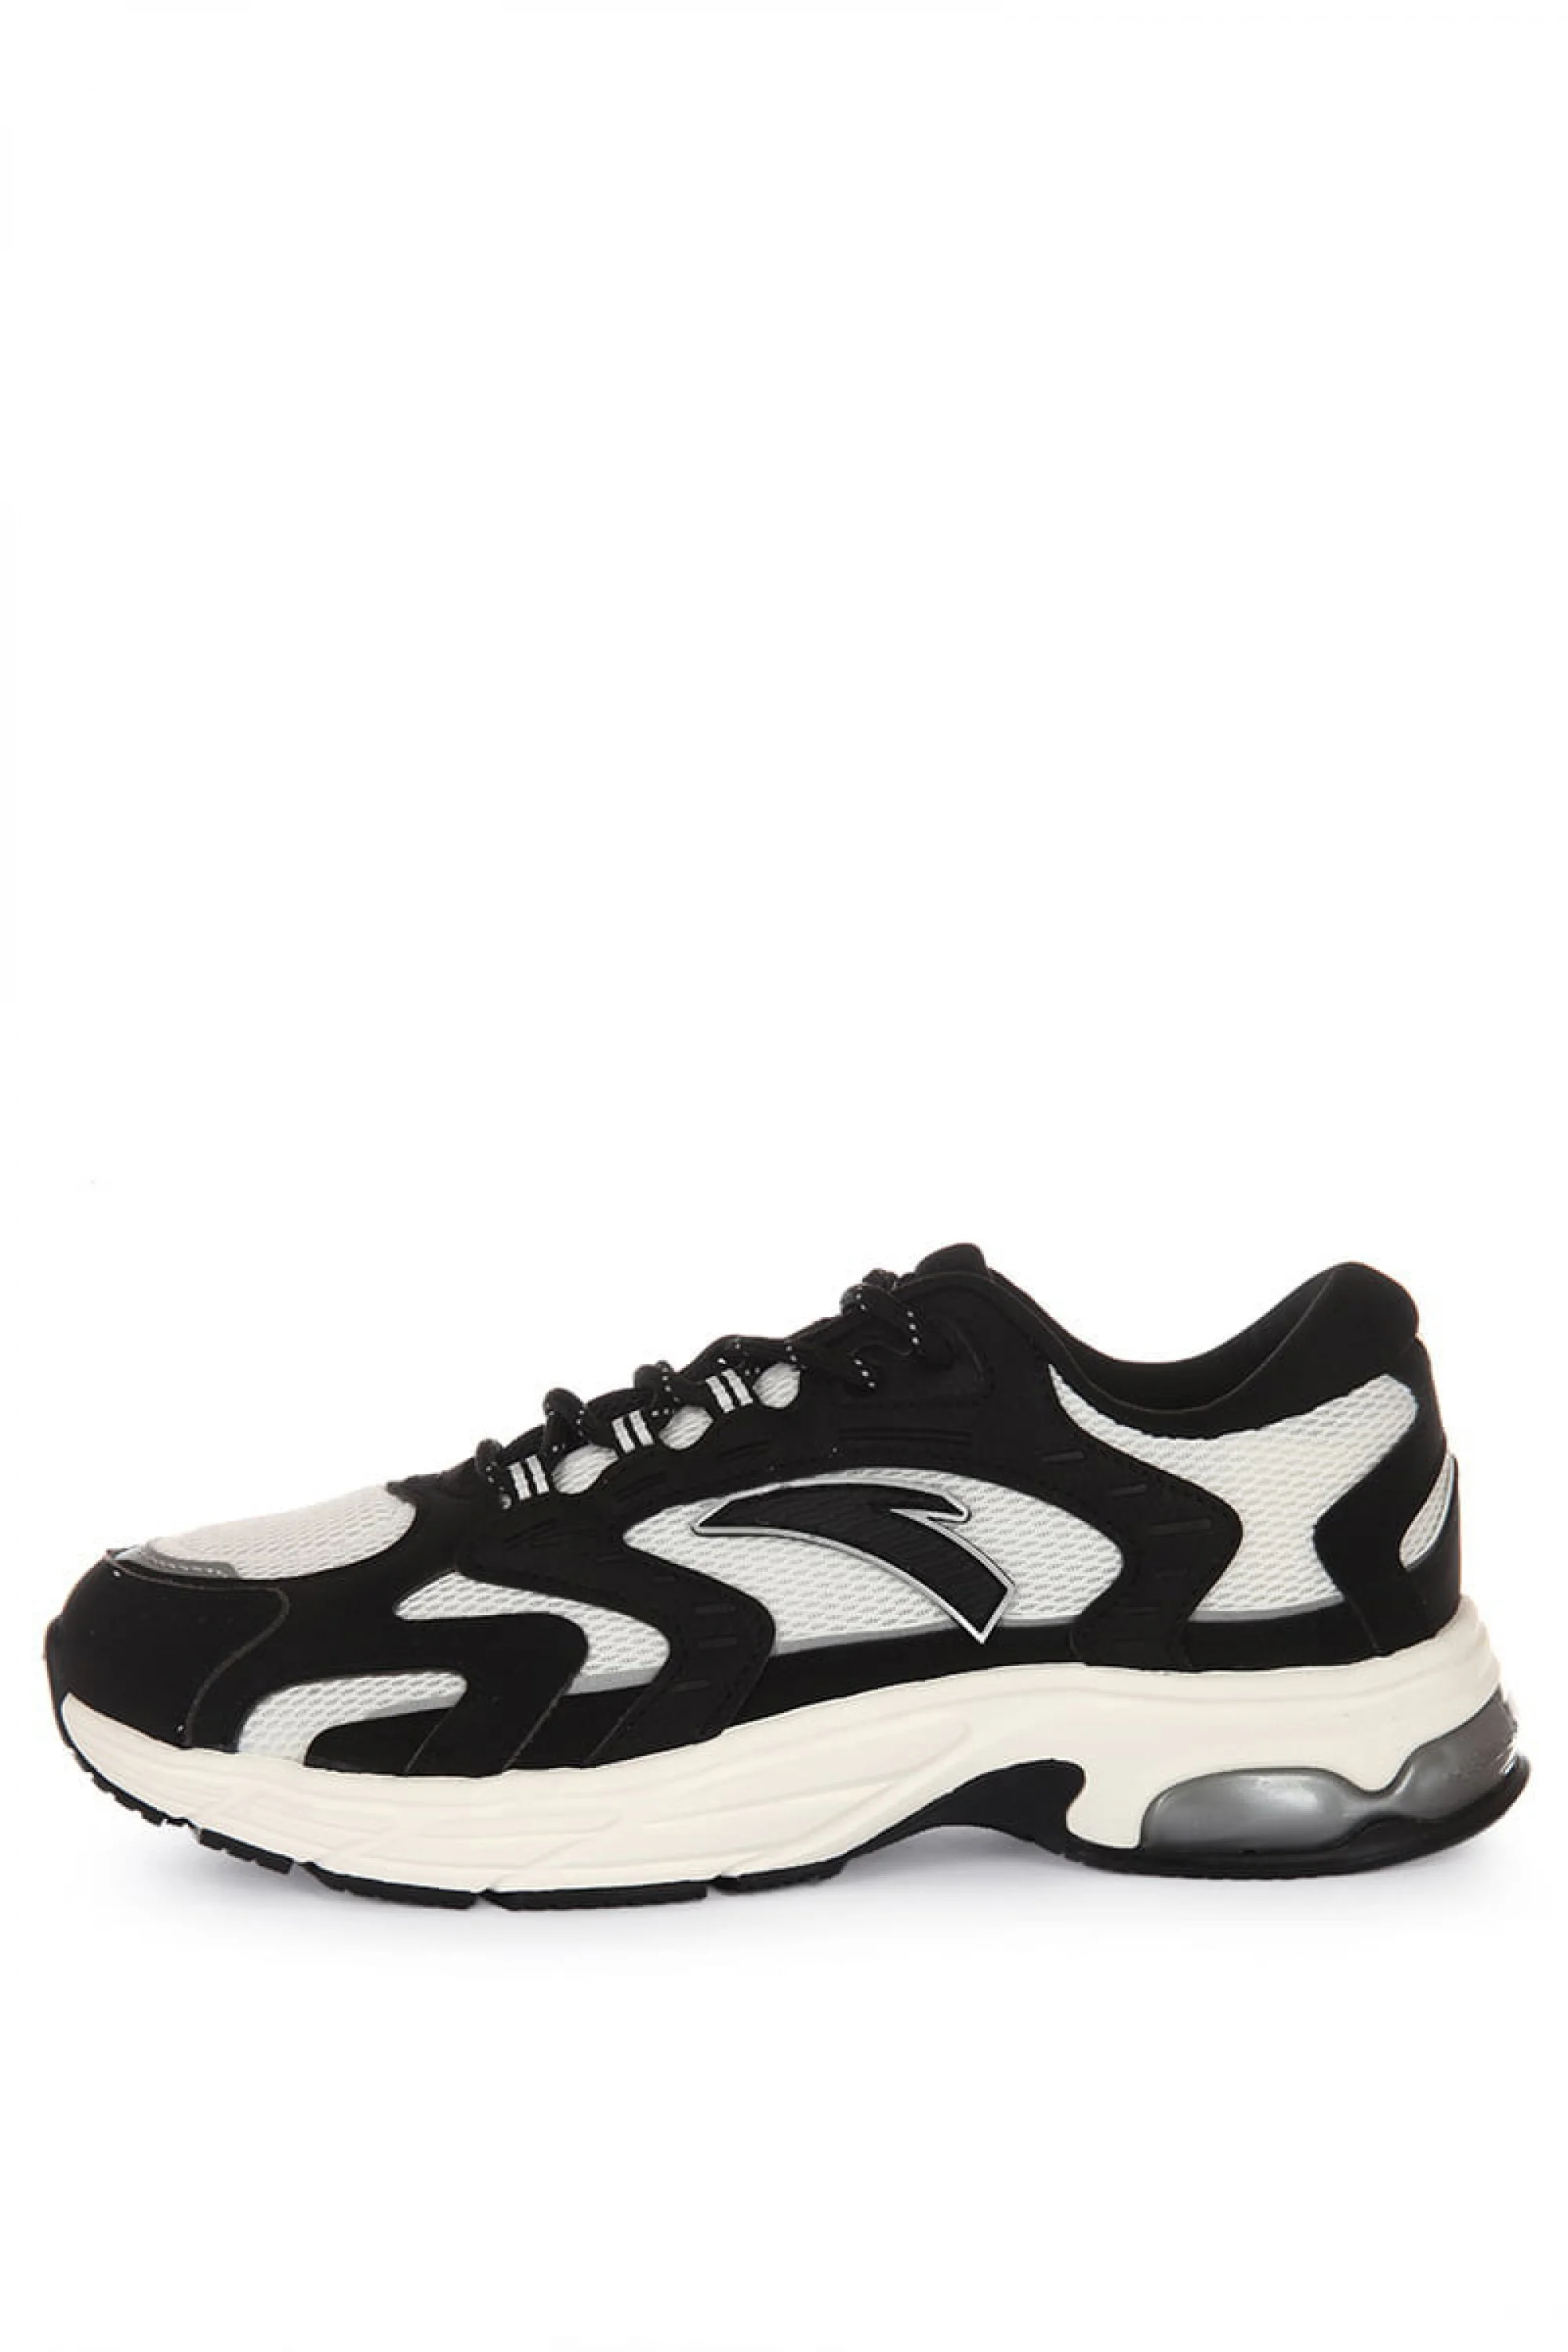 Купить кроссовки для бега Anta AT954 (812315503-7) в интернет-магазине Anta-sport.ru